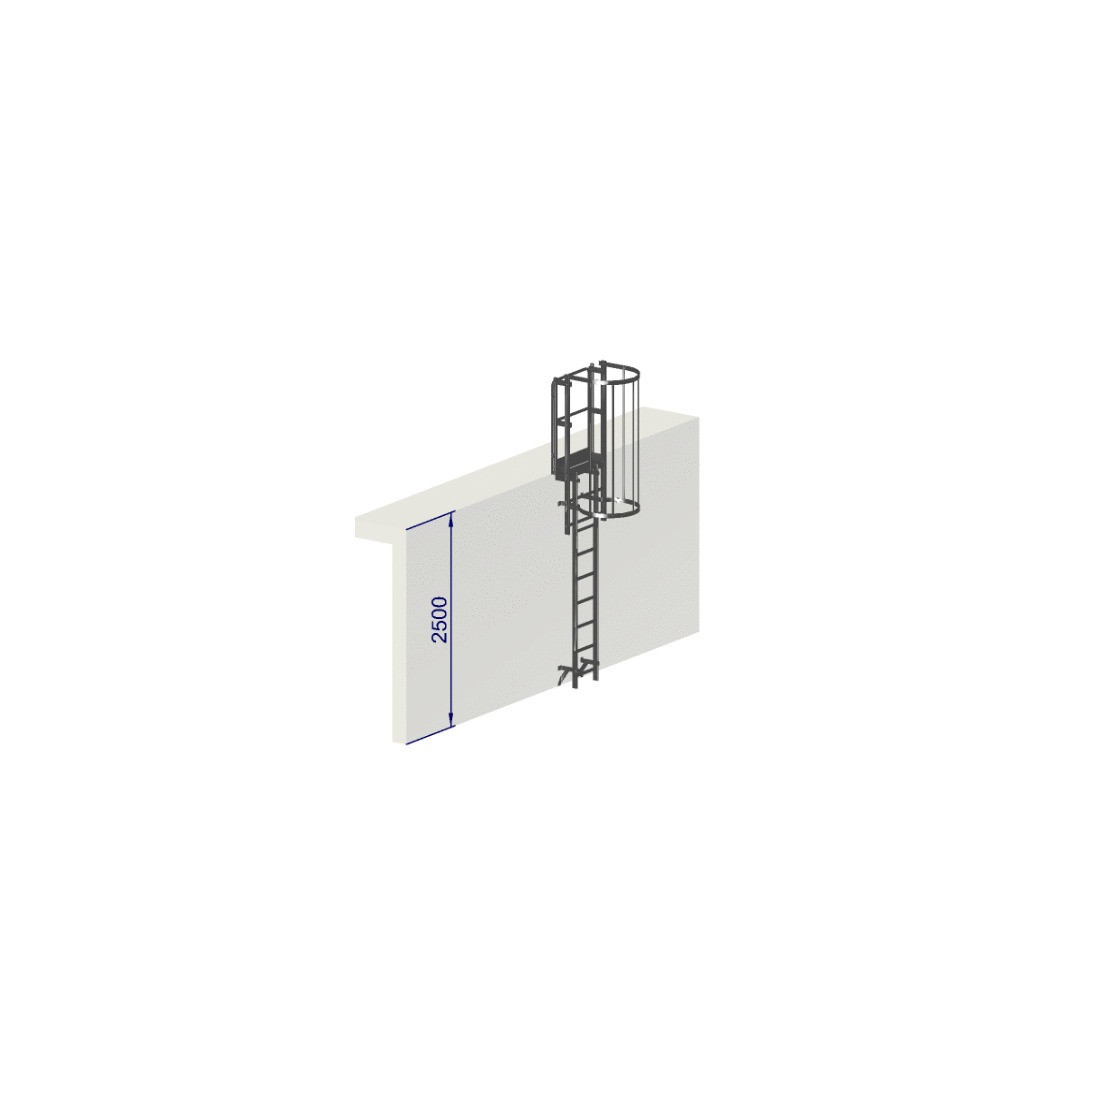 Escalera de proteccion dorsal altura 2500 - Crinolina con aros de proteccion